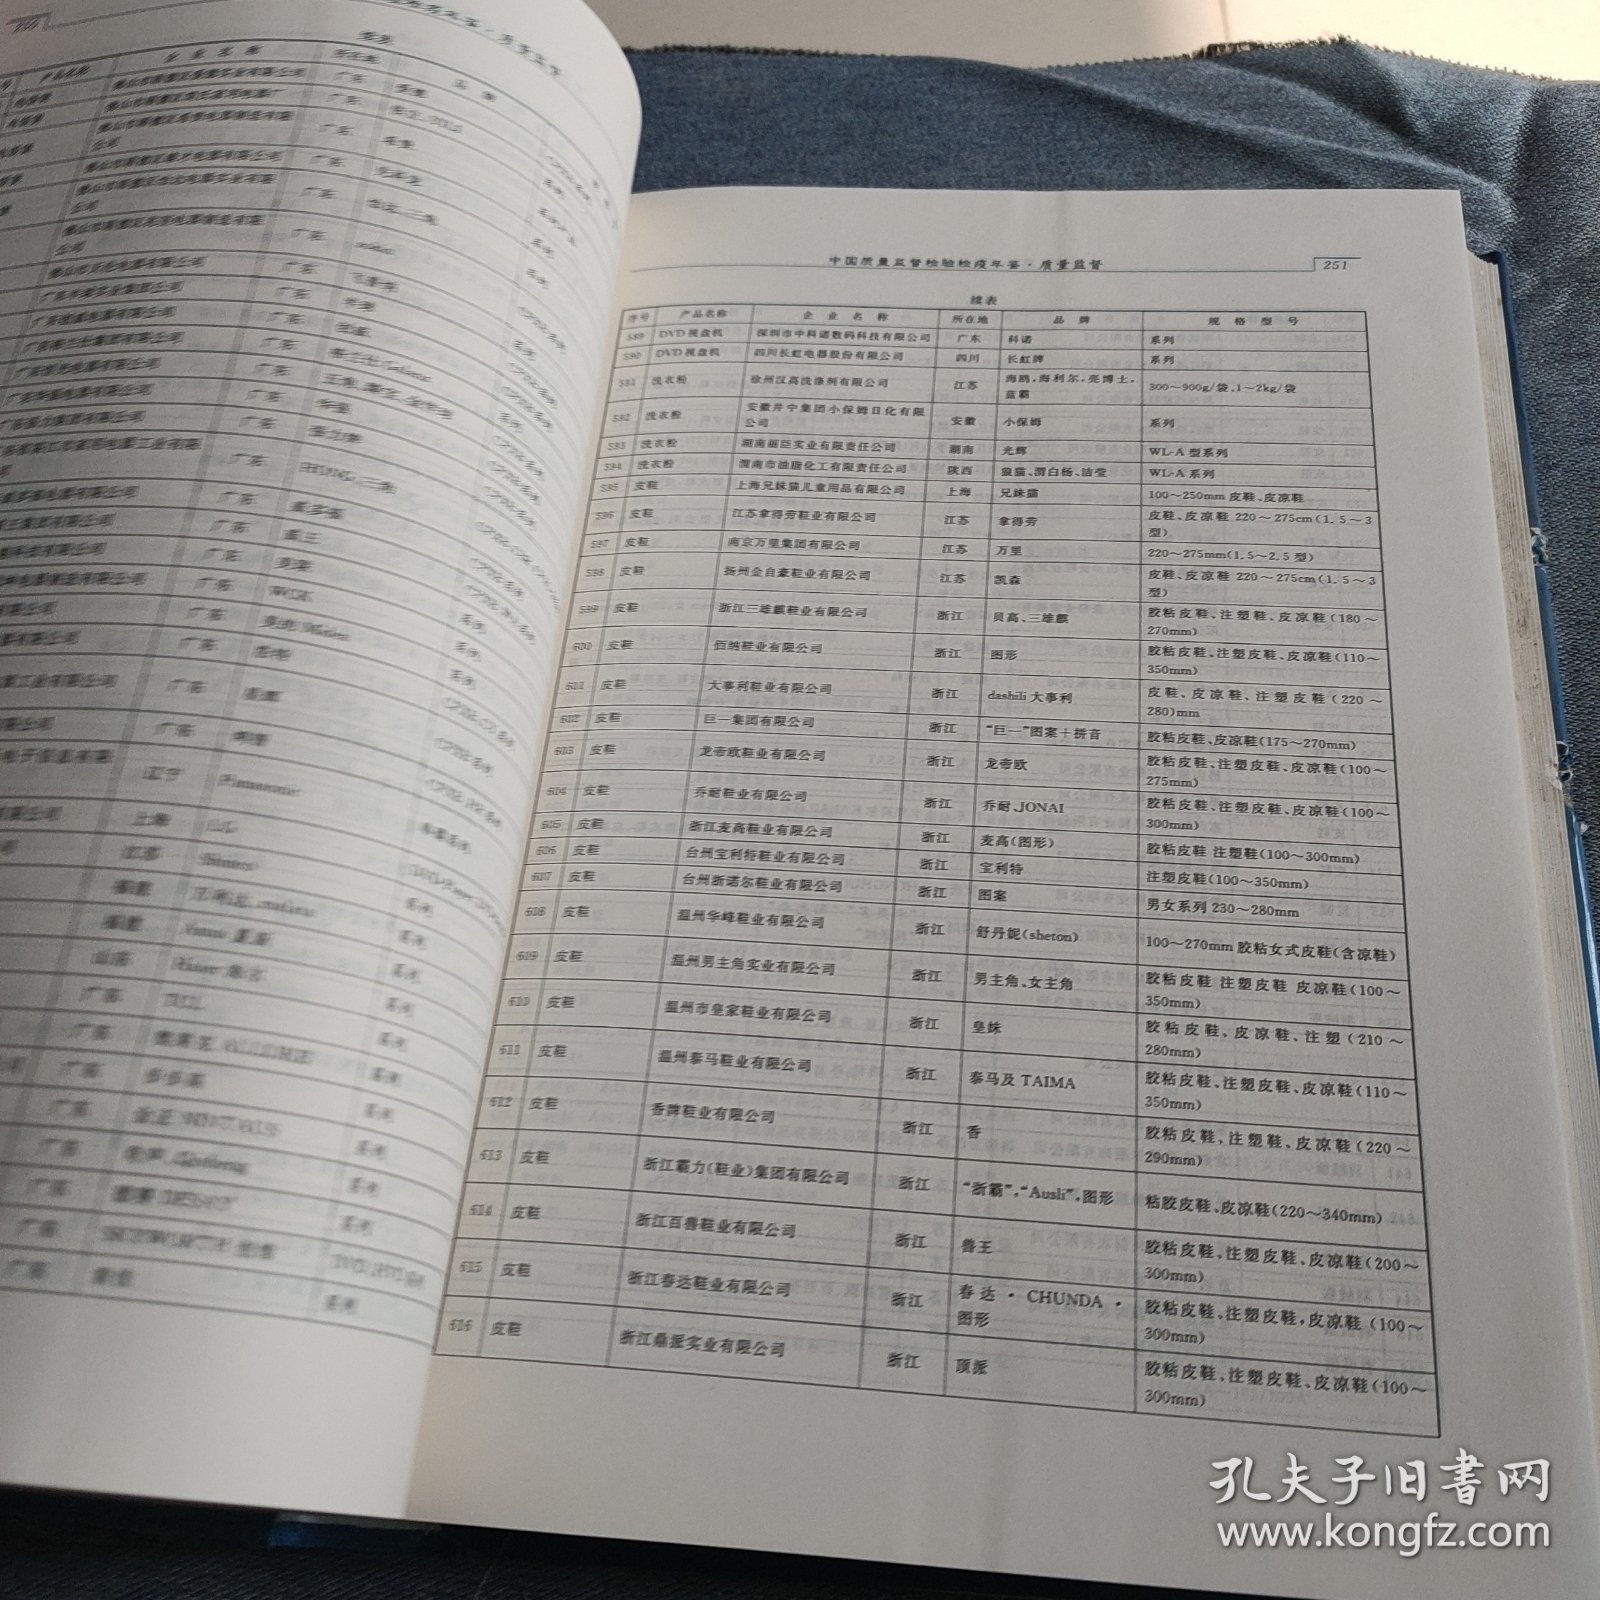 中国质量监督检验检疫年鉴 2007